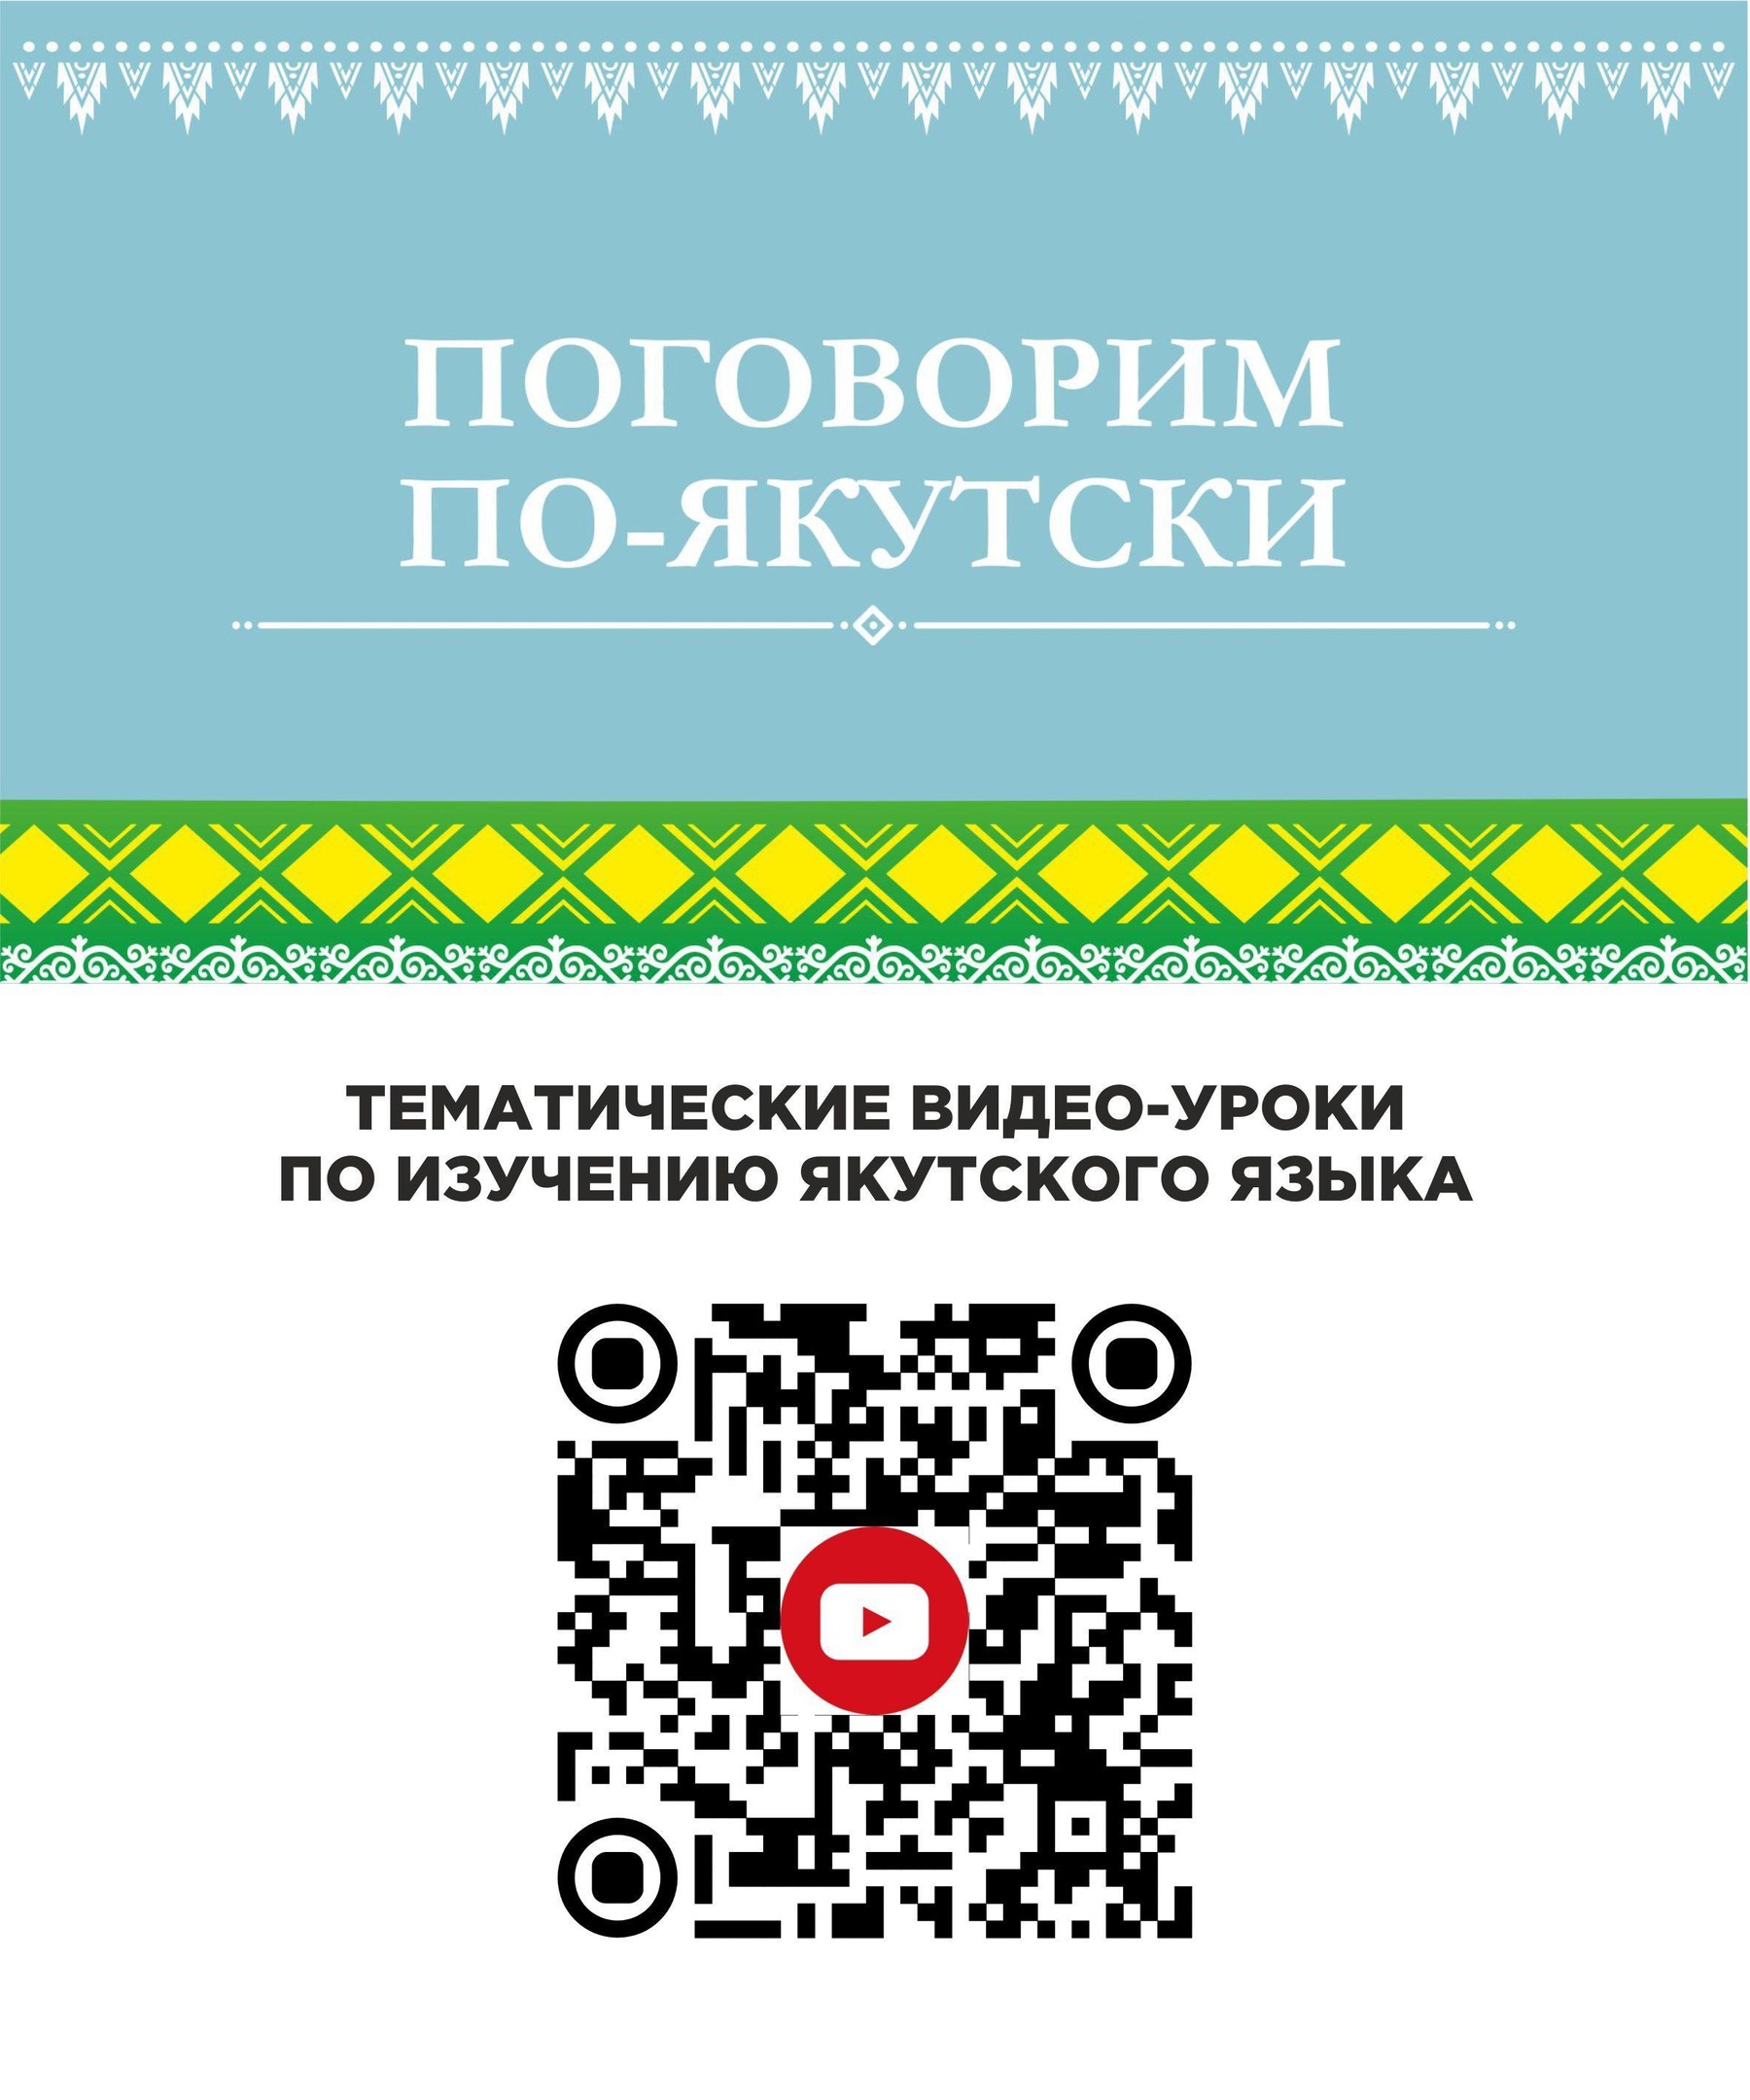 Языковые проекты Дома дружбы народов Якутии презентуют 24 апреля